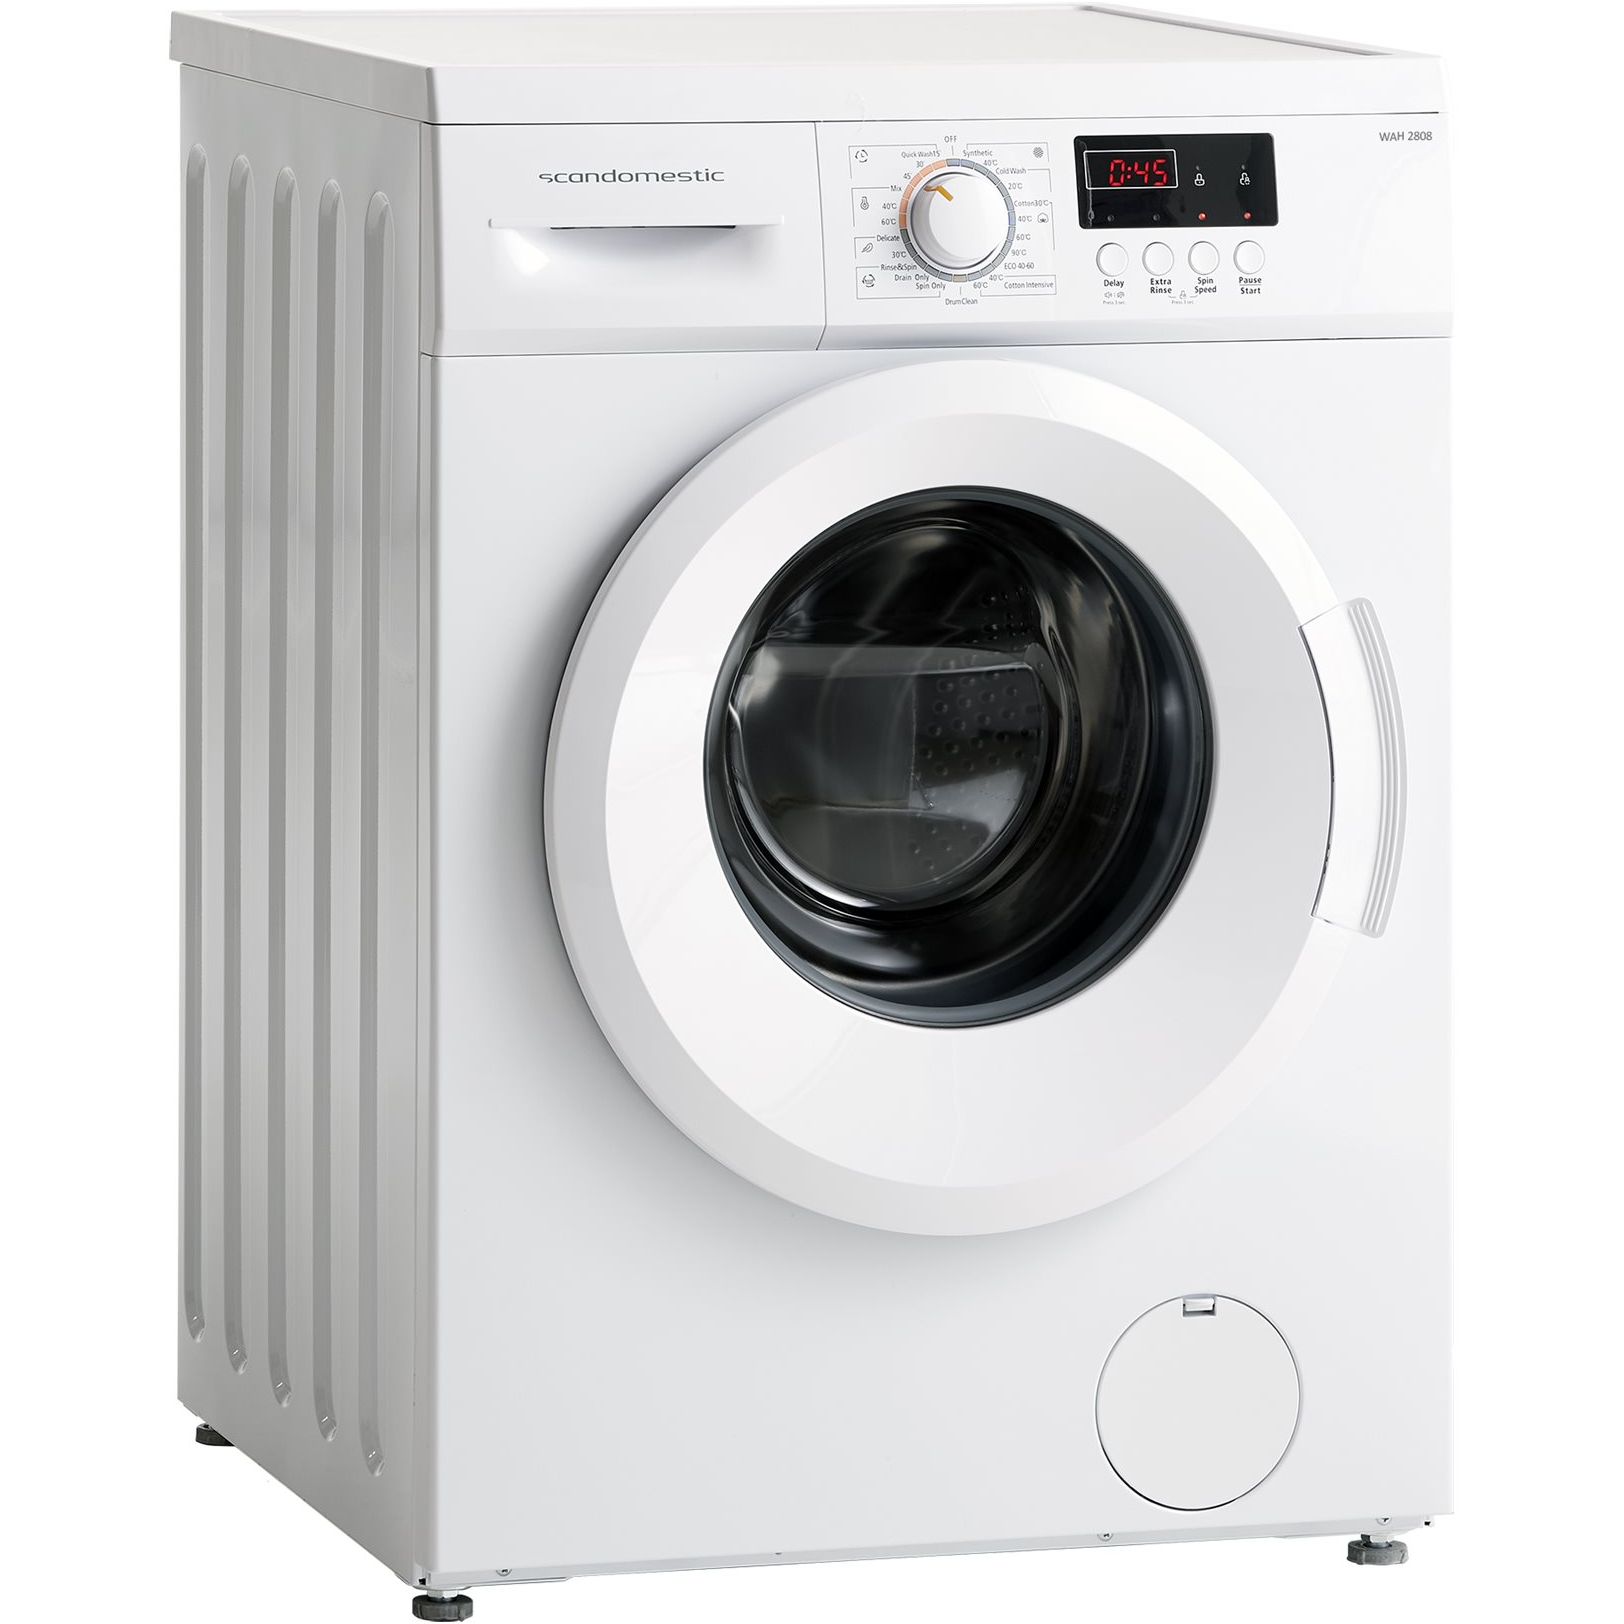 5704704019614 Scandomestic WAH 2808 W - Frontbetjent vaskemaskine Hvidevarer,Vaskemaskine,Frontbetjente vaskemaskiner 8300004900 WAH 2808 W